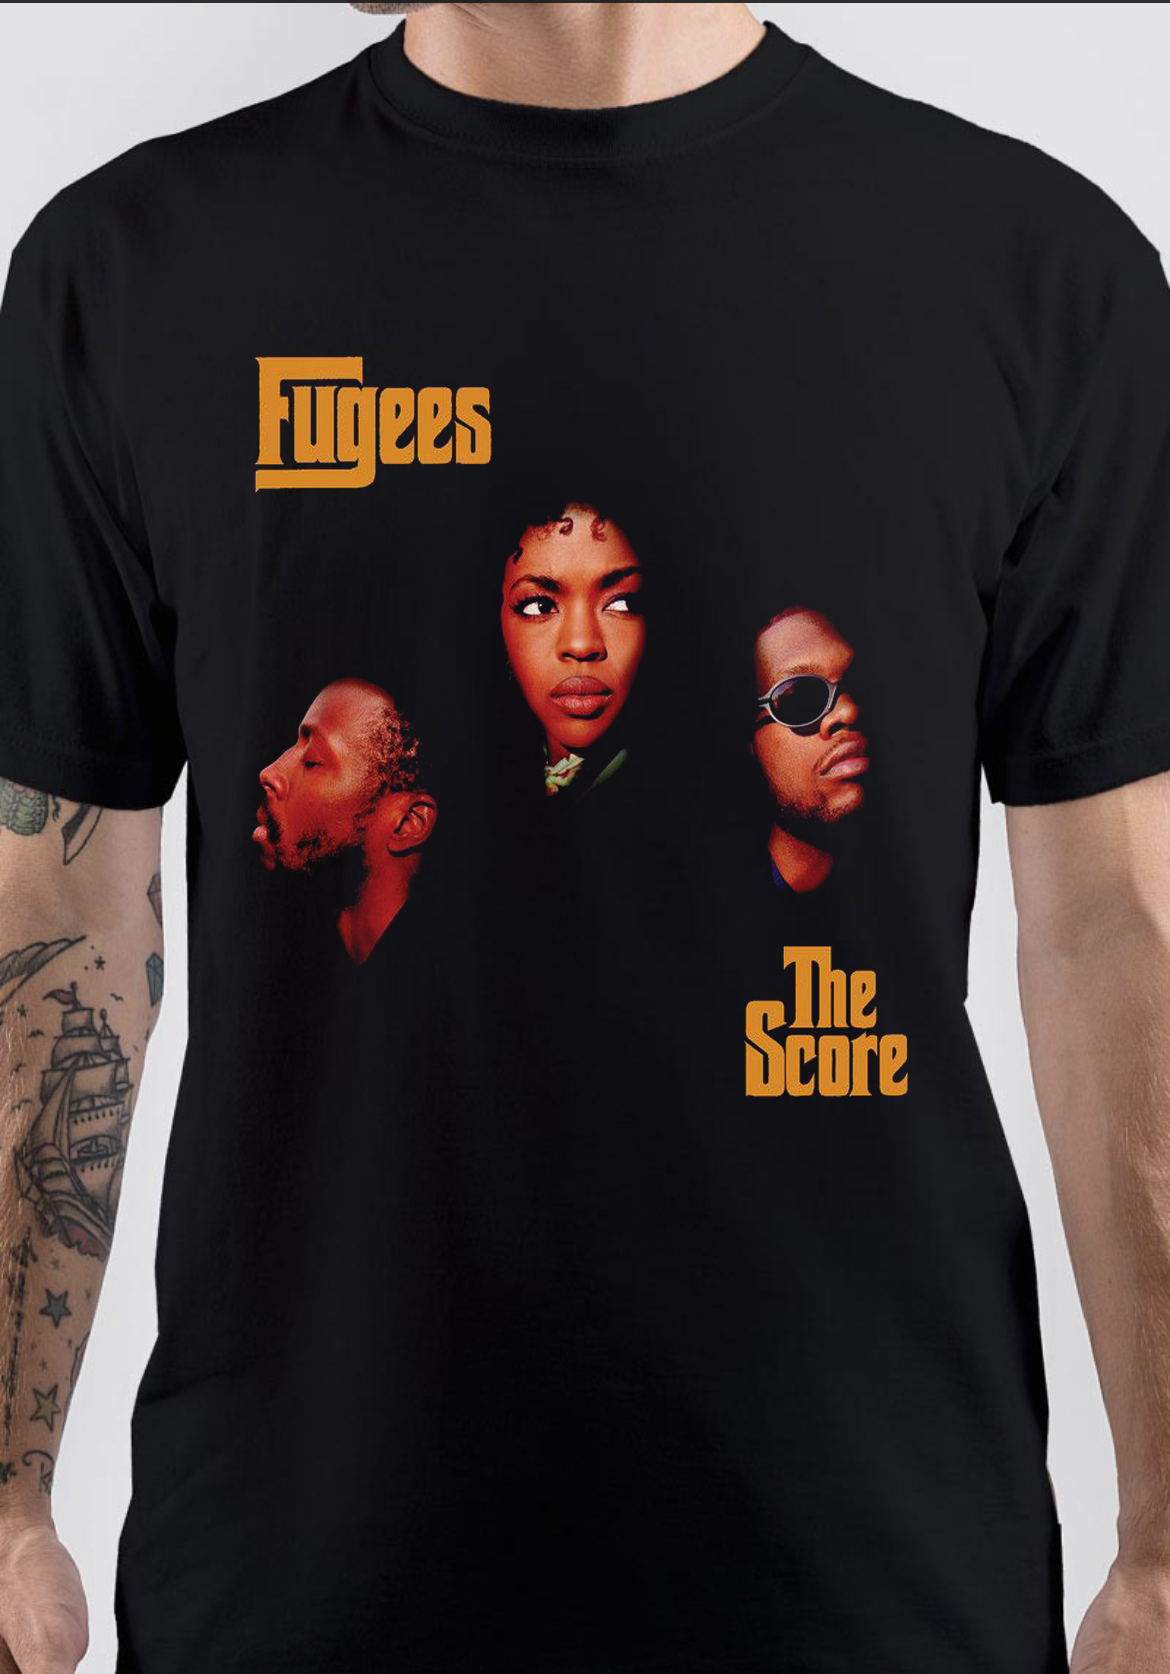 Fugees T-Shirt - Swag Shirts